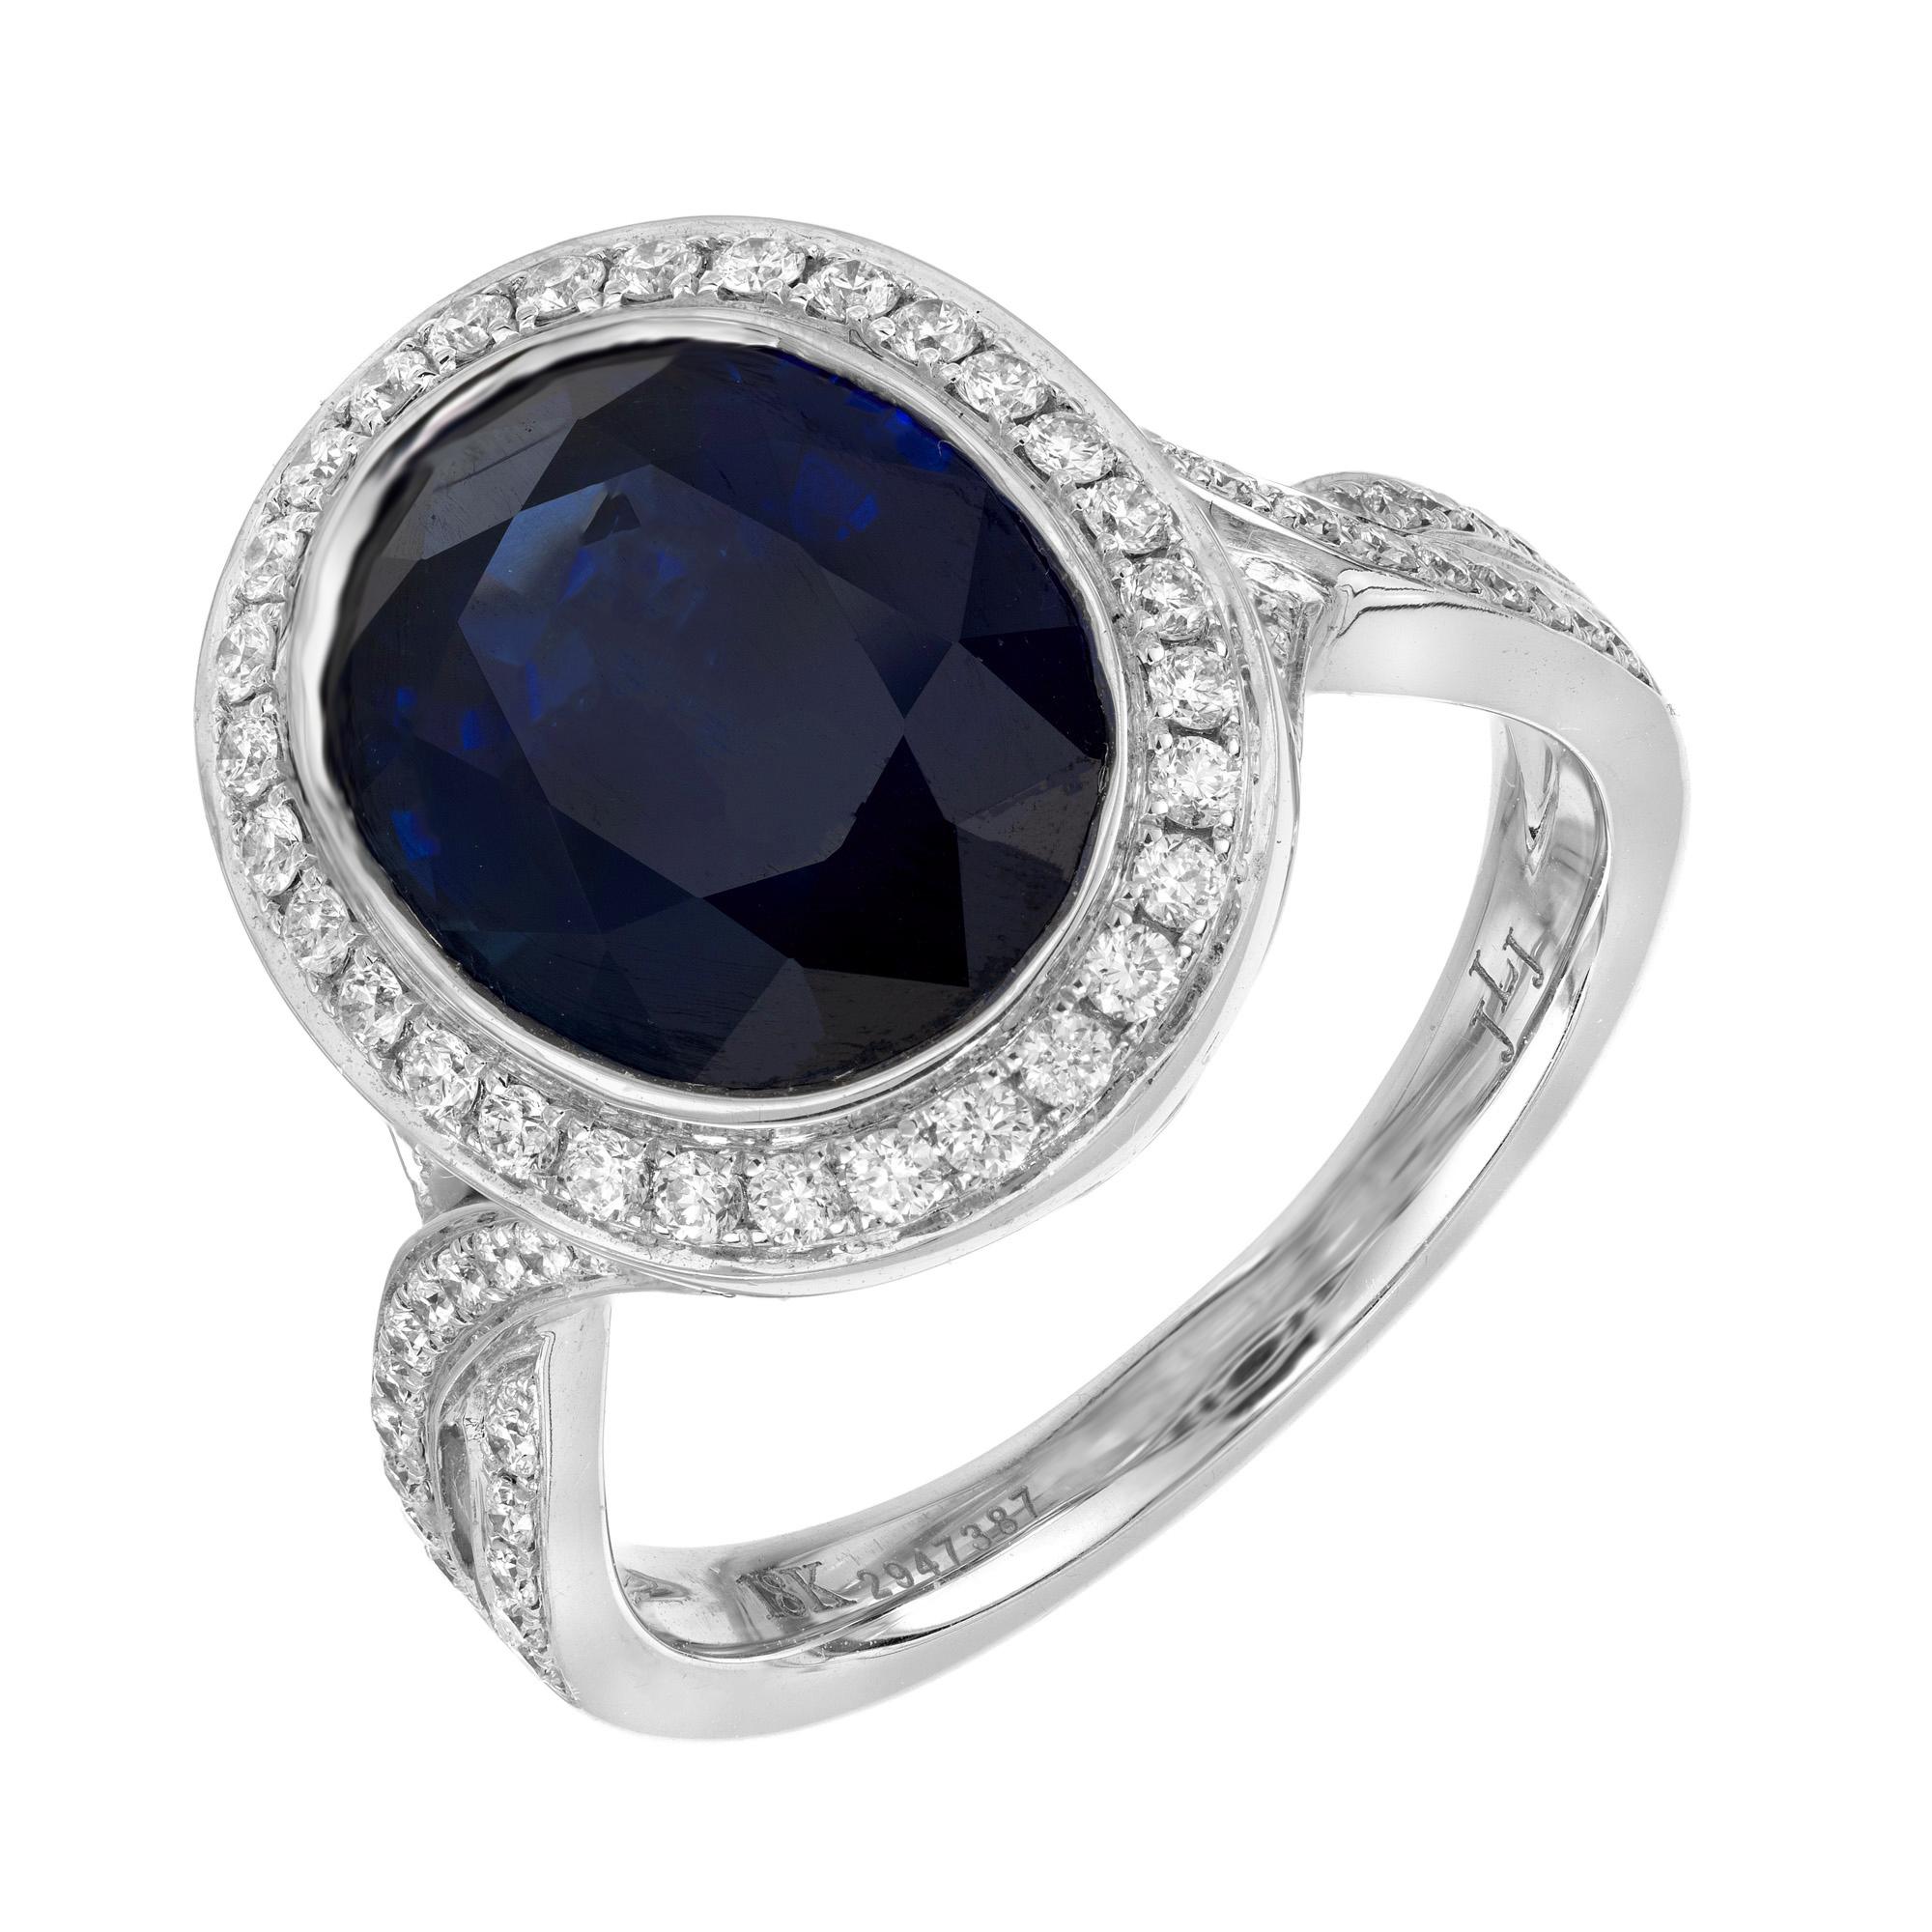 Atemberaubender tiefblauer ovaler Verlobungsring mit natürlichem Saphir und Diamant. Im Mittelpunkt dieser Fassung steht ein tiefblauer, ovaler Saphir, der in 18 Karat Weißgold gefasst und mit einer Lünette versehen ist. Der Saphir wird von einem